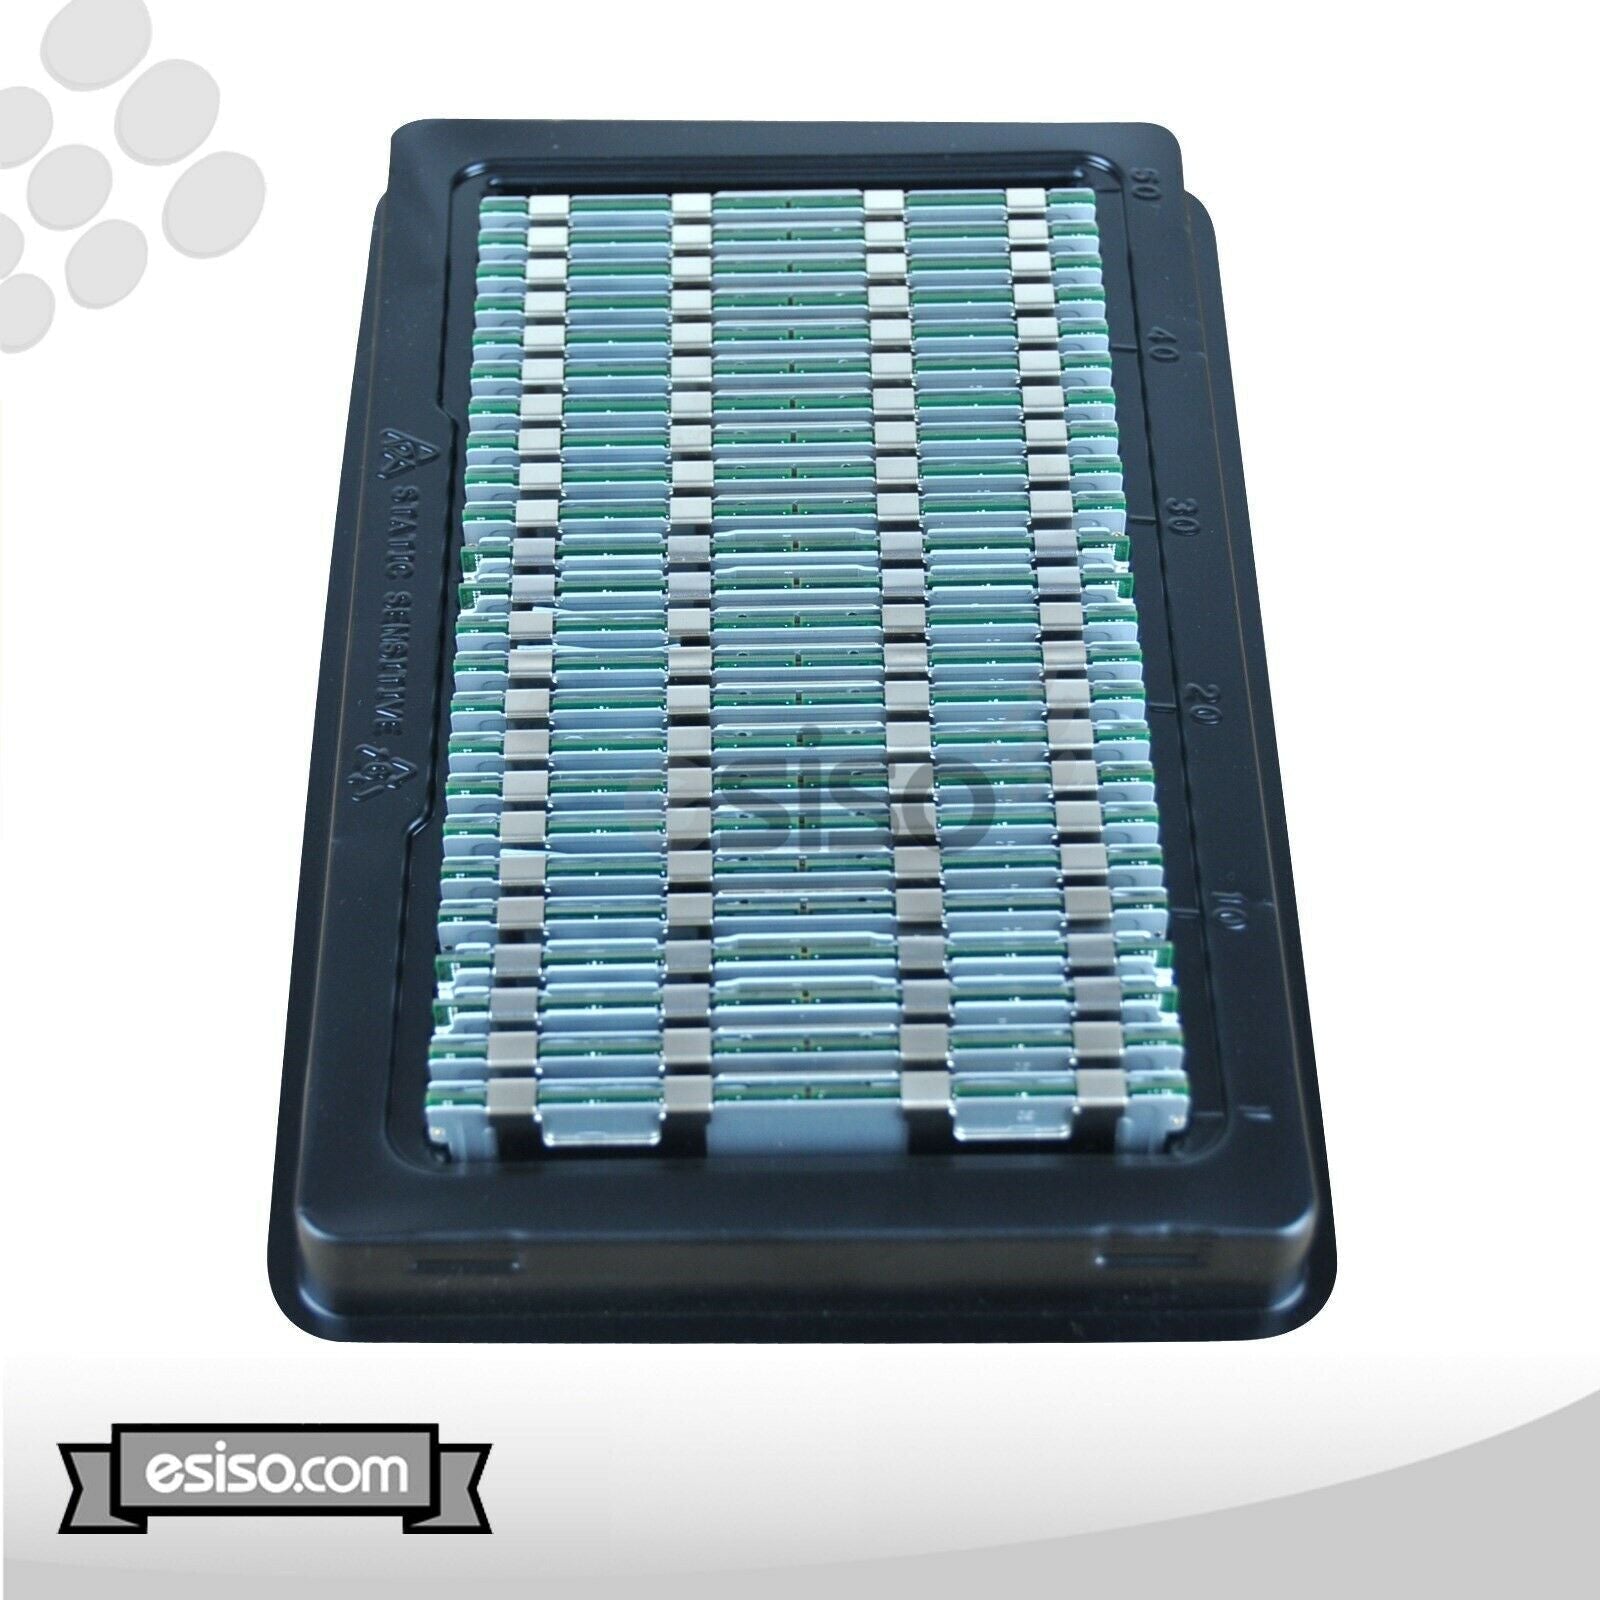 96GB (6x 16GB) 10600R RAM MEMORY MODULE FOR HP BL460C BL420C BL660c DL160 G8